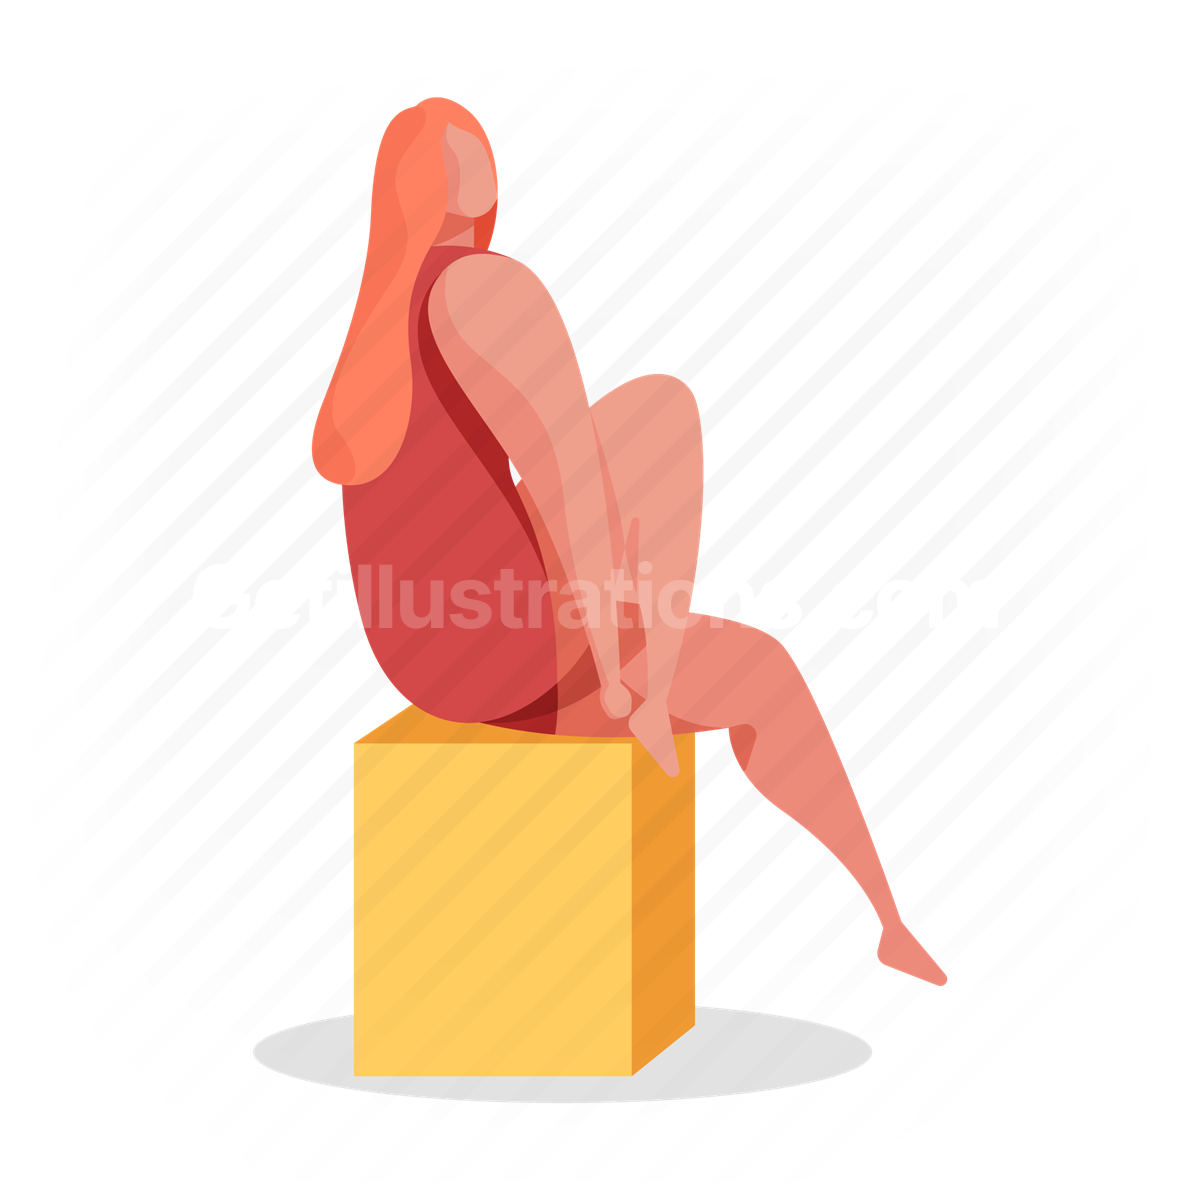 woman, pose, model, sit